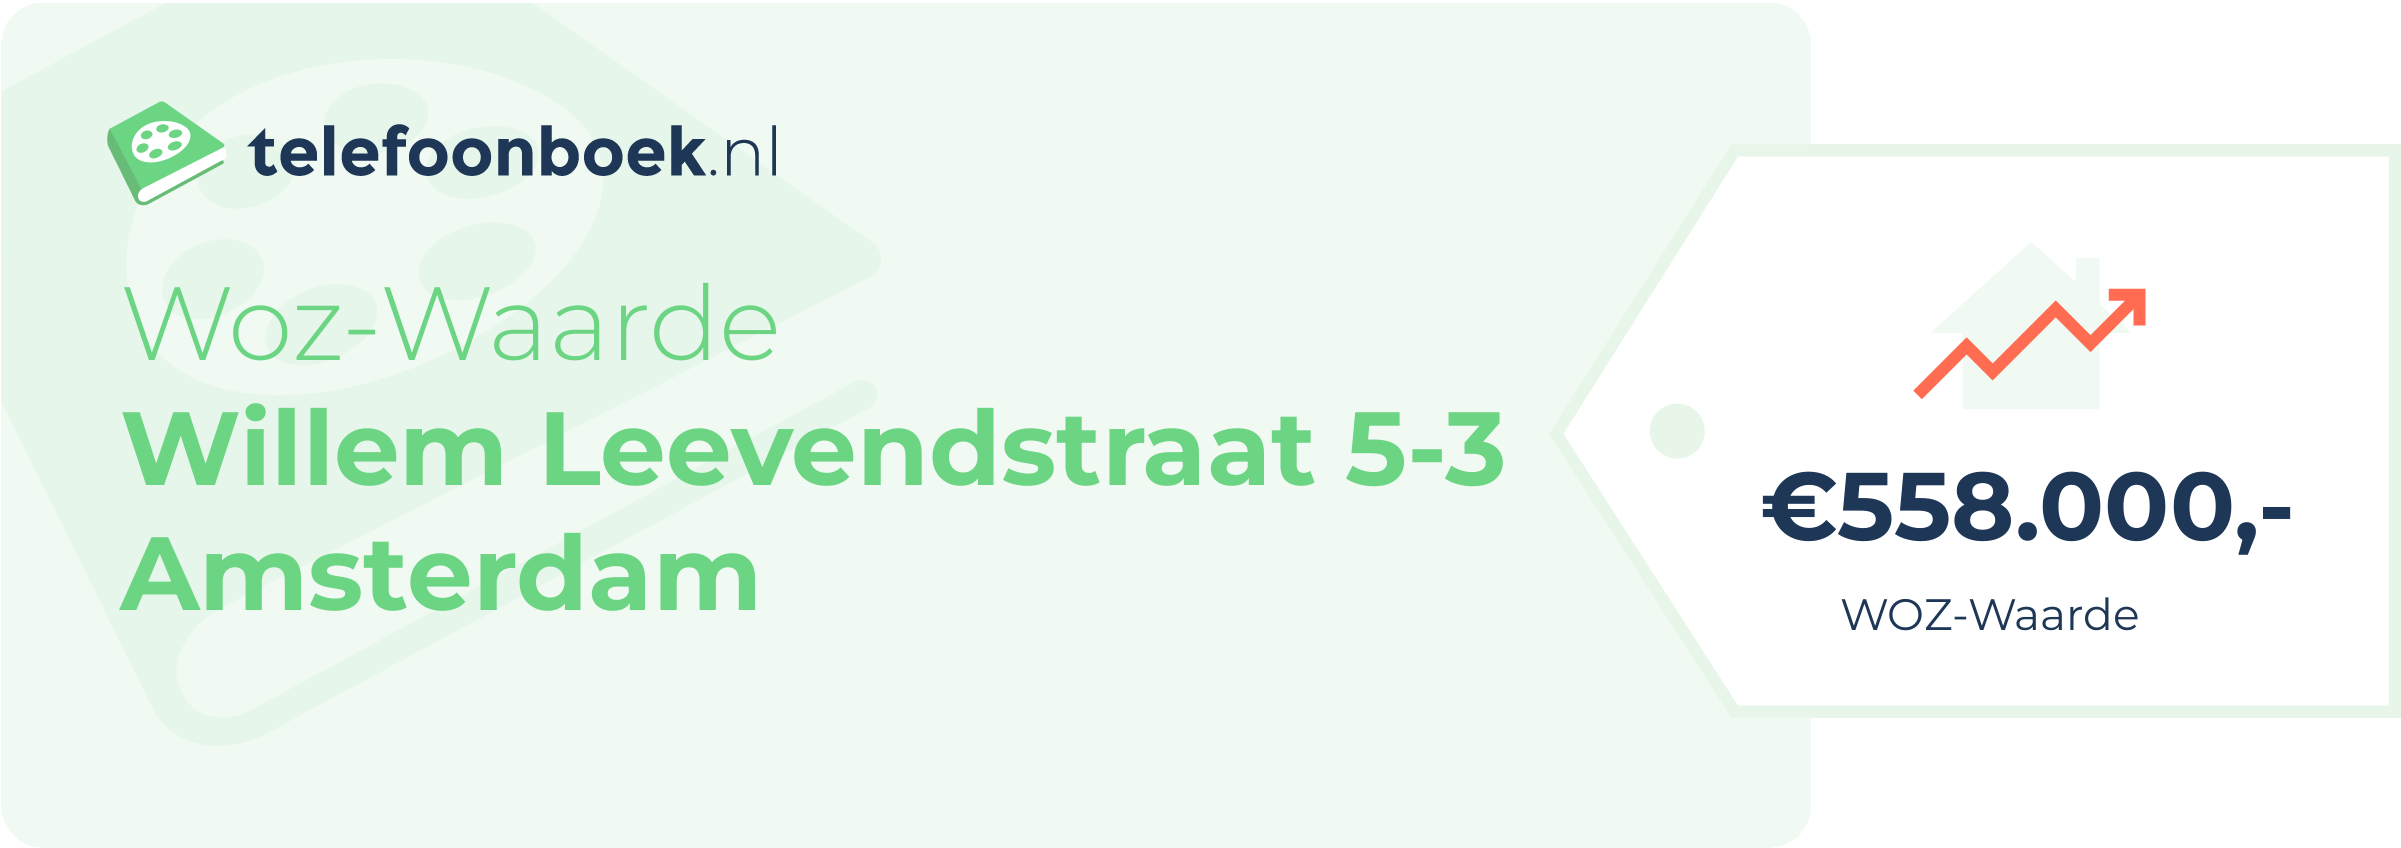 WOZ-waarde Willem Leevendstraat 5-3 Amsterdam